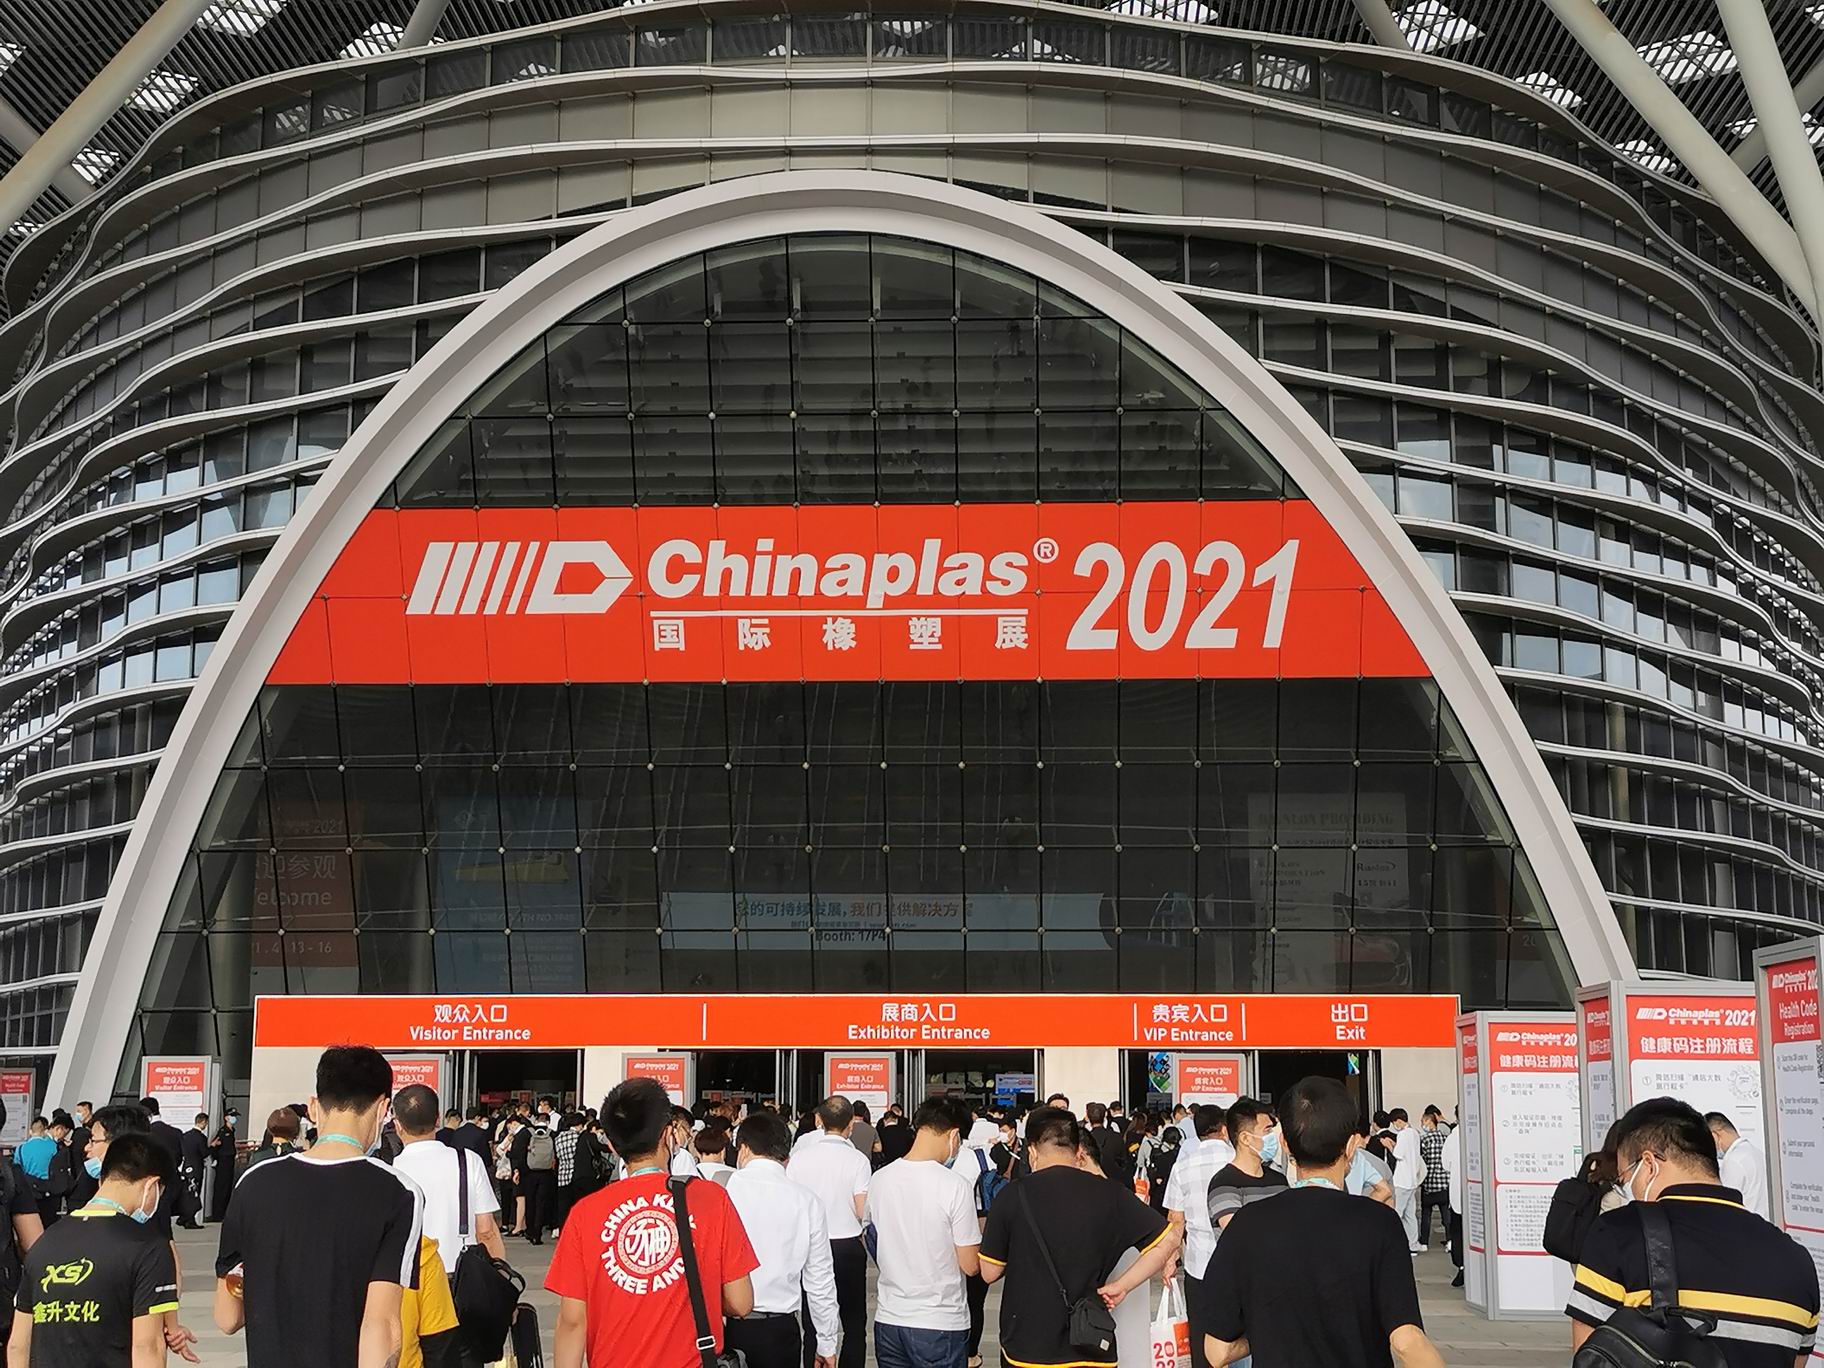 We participated Chinaplas 2021